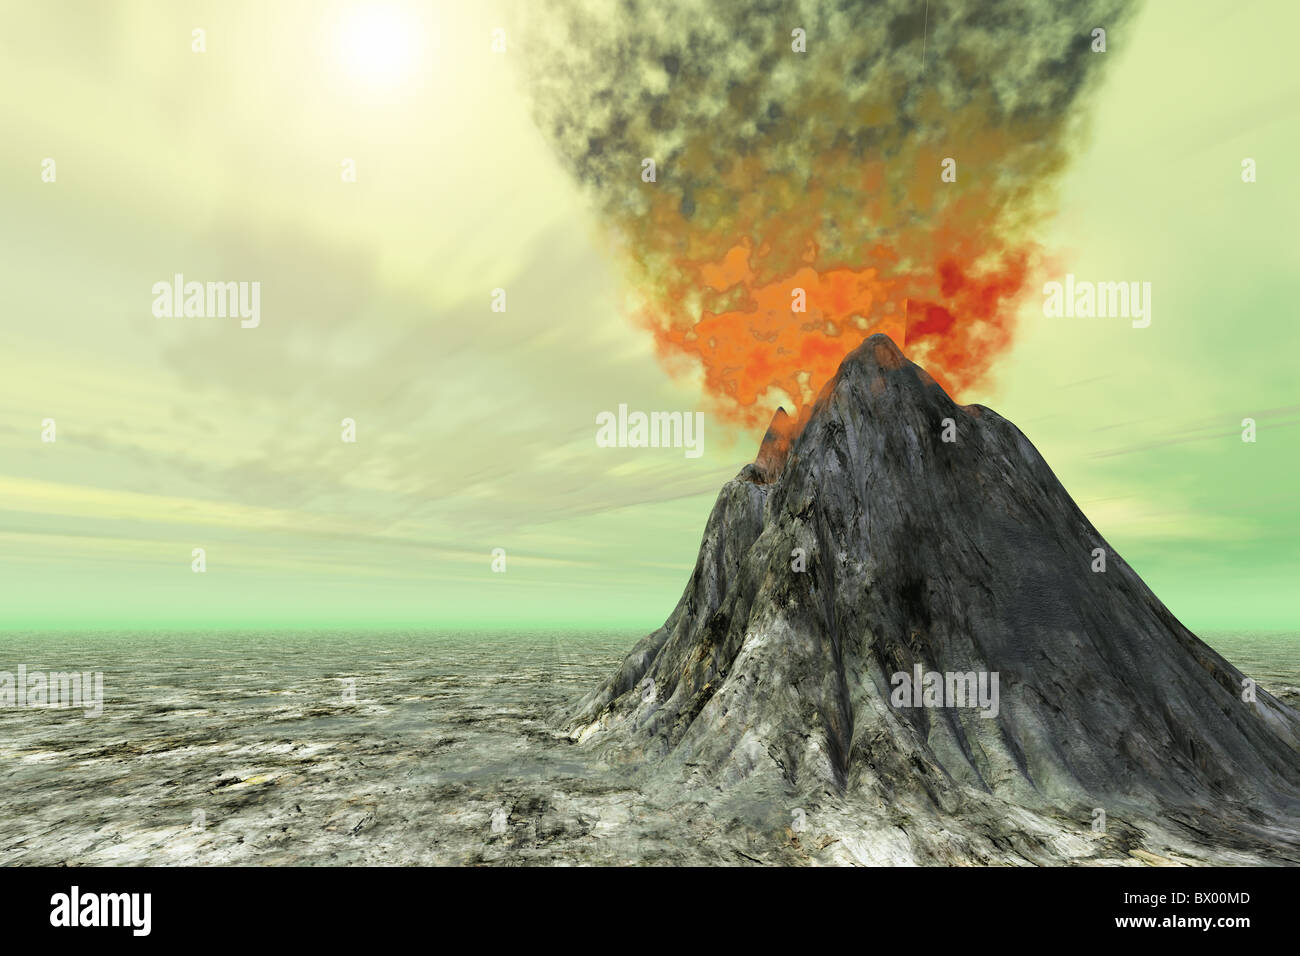 Ciel de soufre - un volcan vient à la vie avec de la fumée, des cendres et de l'incendie. Banque D'Images